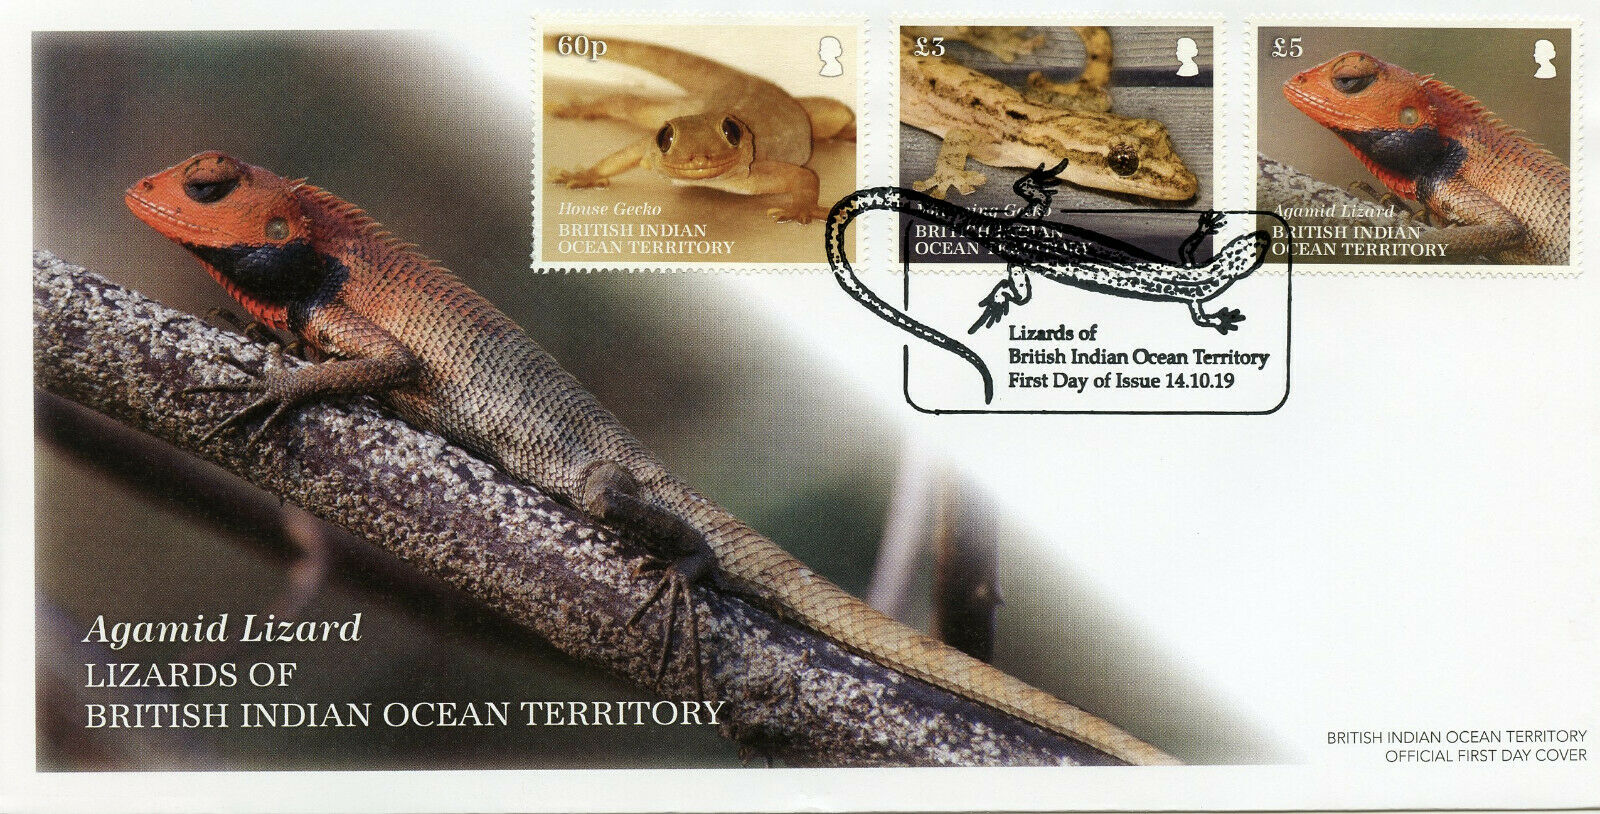 BIOT Stamps 2019 FDC Lizards Geckos House Gecko Agamid Lizard Reptiles 3v Cover